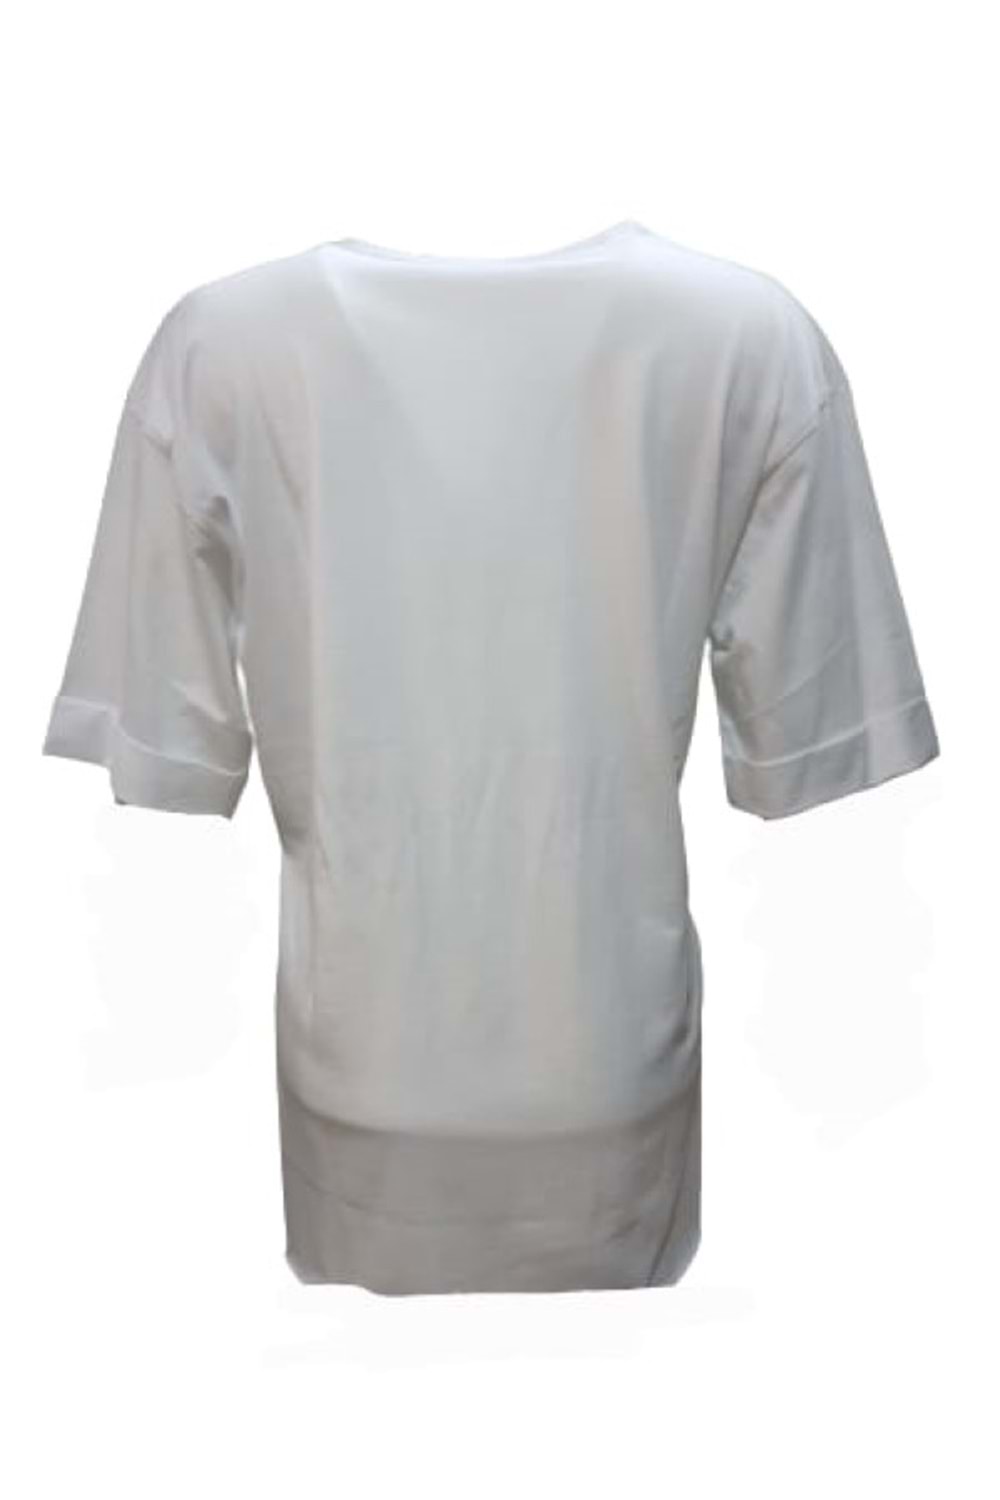 Kuzey Kadın Baskılı Yırtmaçlı Oversize Kadın T-shirt 3095 - Beyaz - S